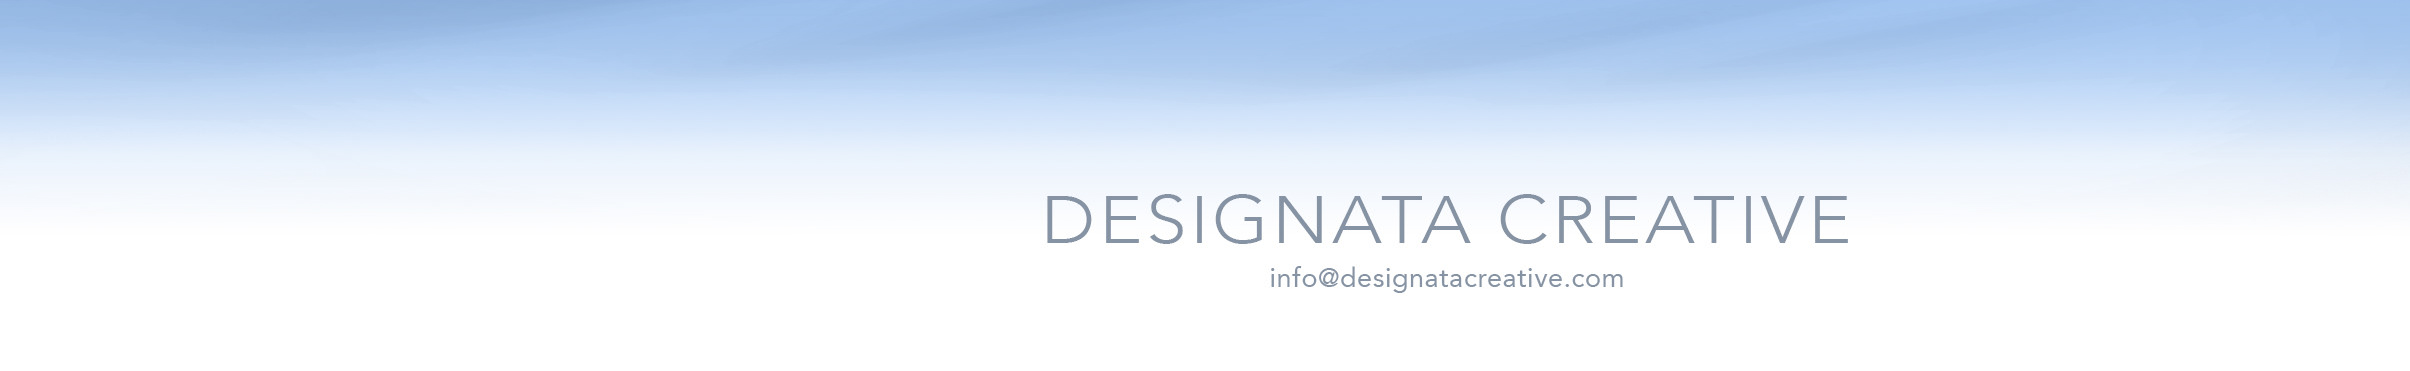 Designata Creative's profile banner